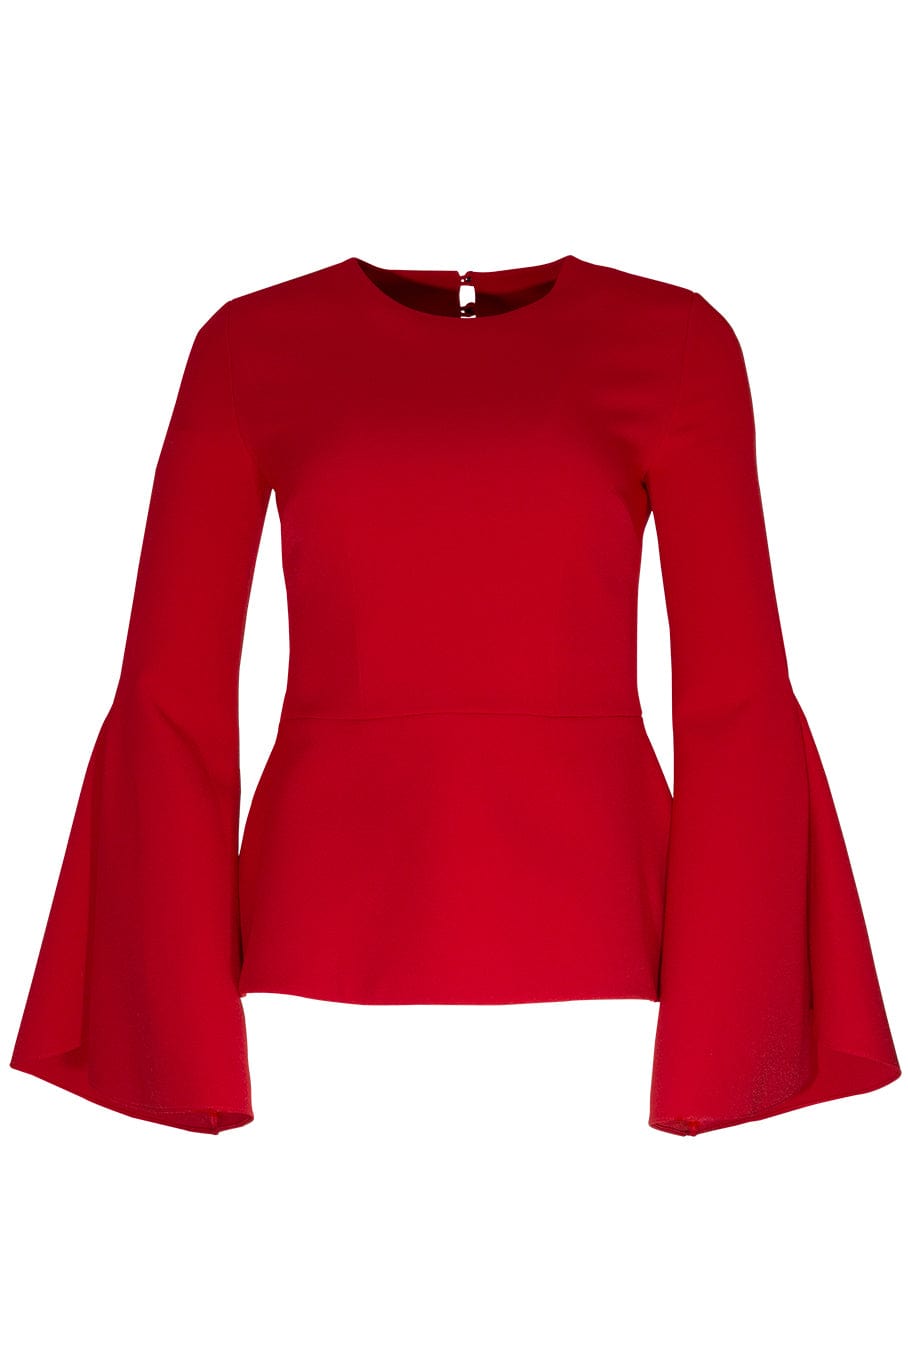 SAFIYAA-Wide Sleeve Top-DAZZLING RED